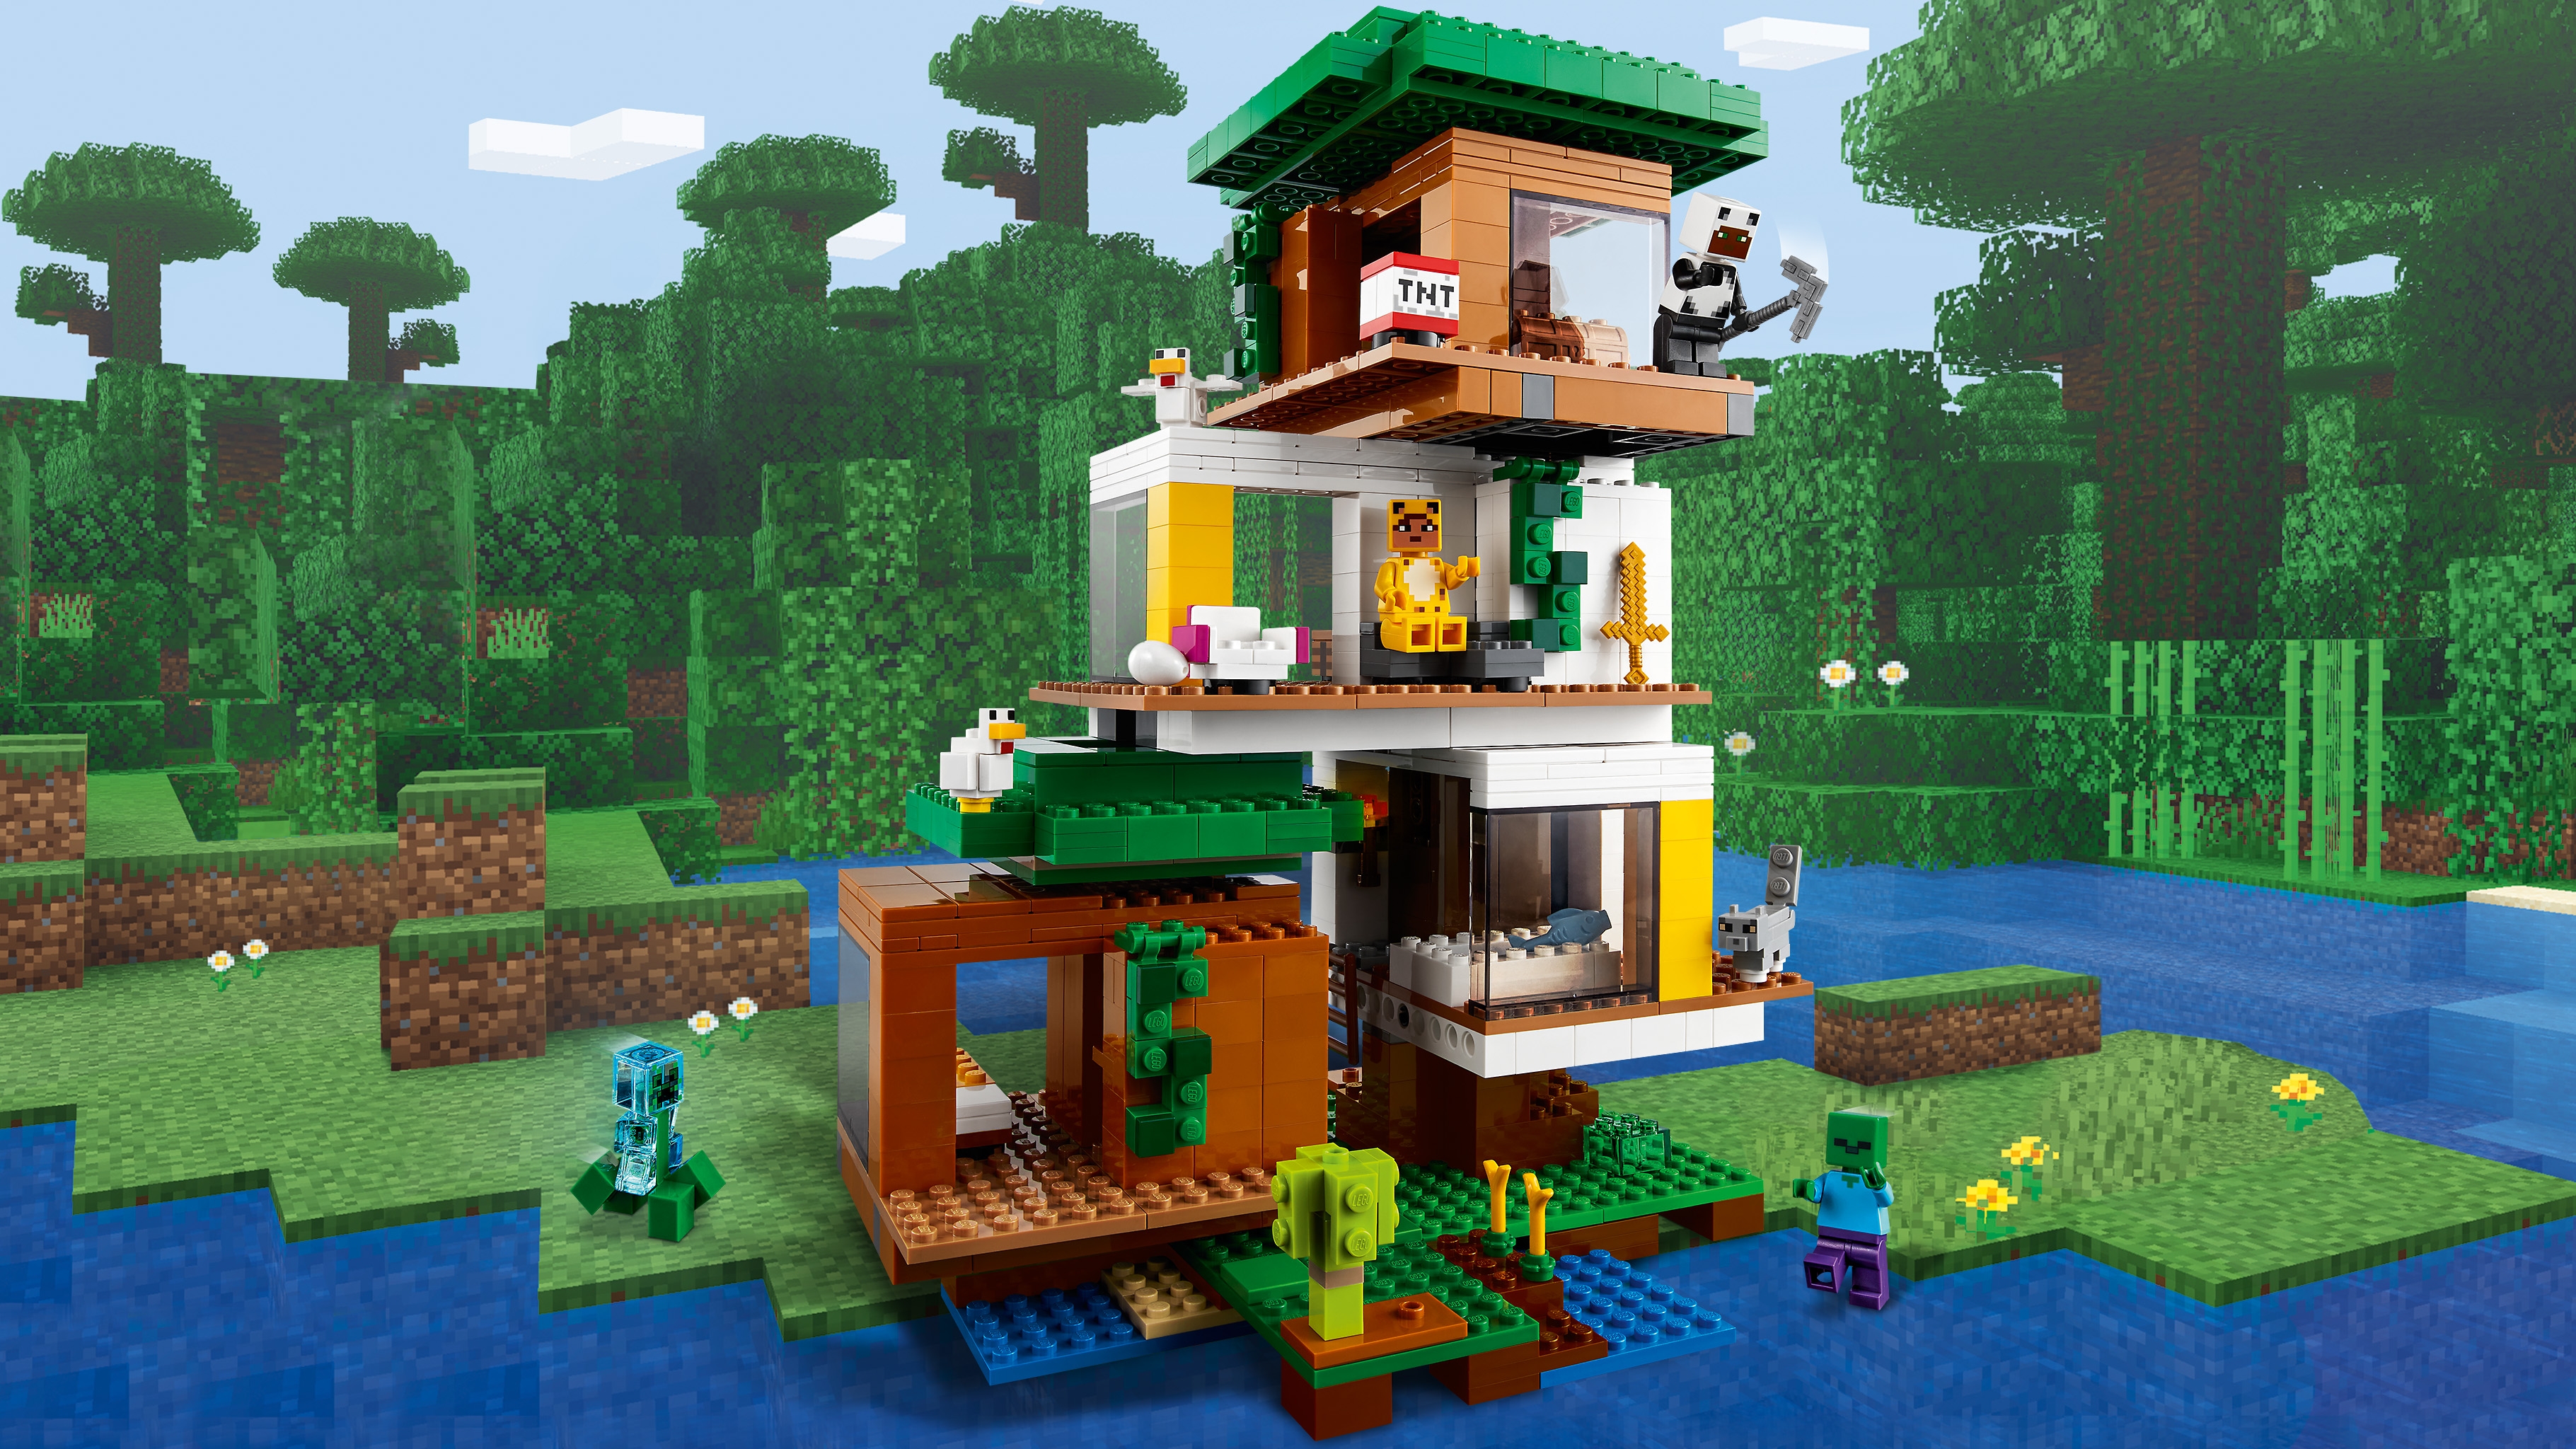 ツリーハウス 21174 - レゴ®マインクラフト セット - LEGO.comキッズ